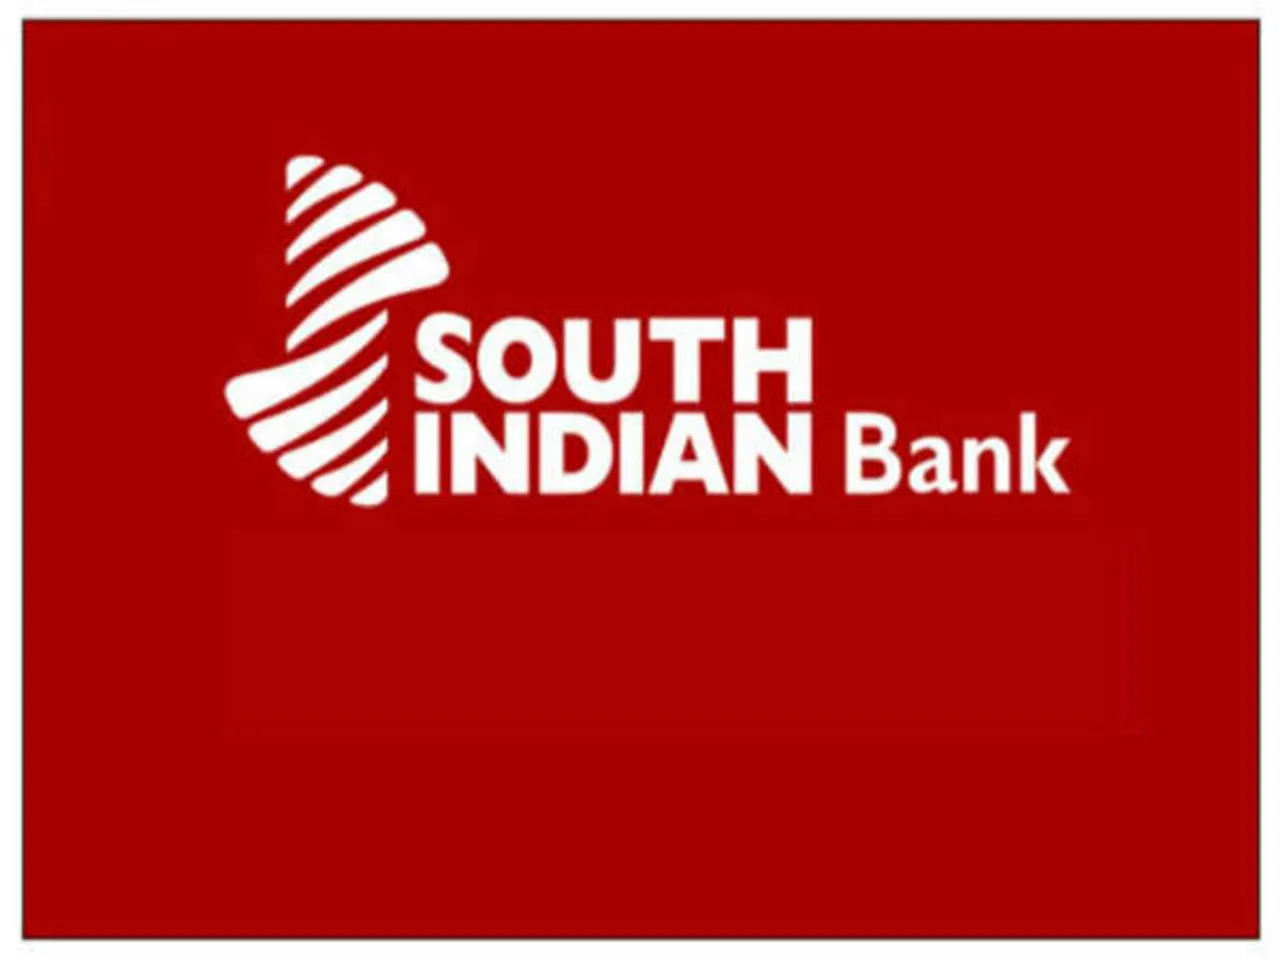 Soth Indian Bank, RBI